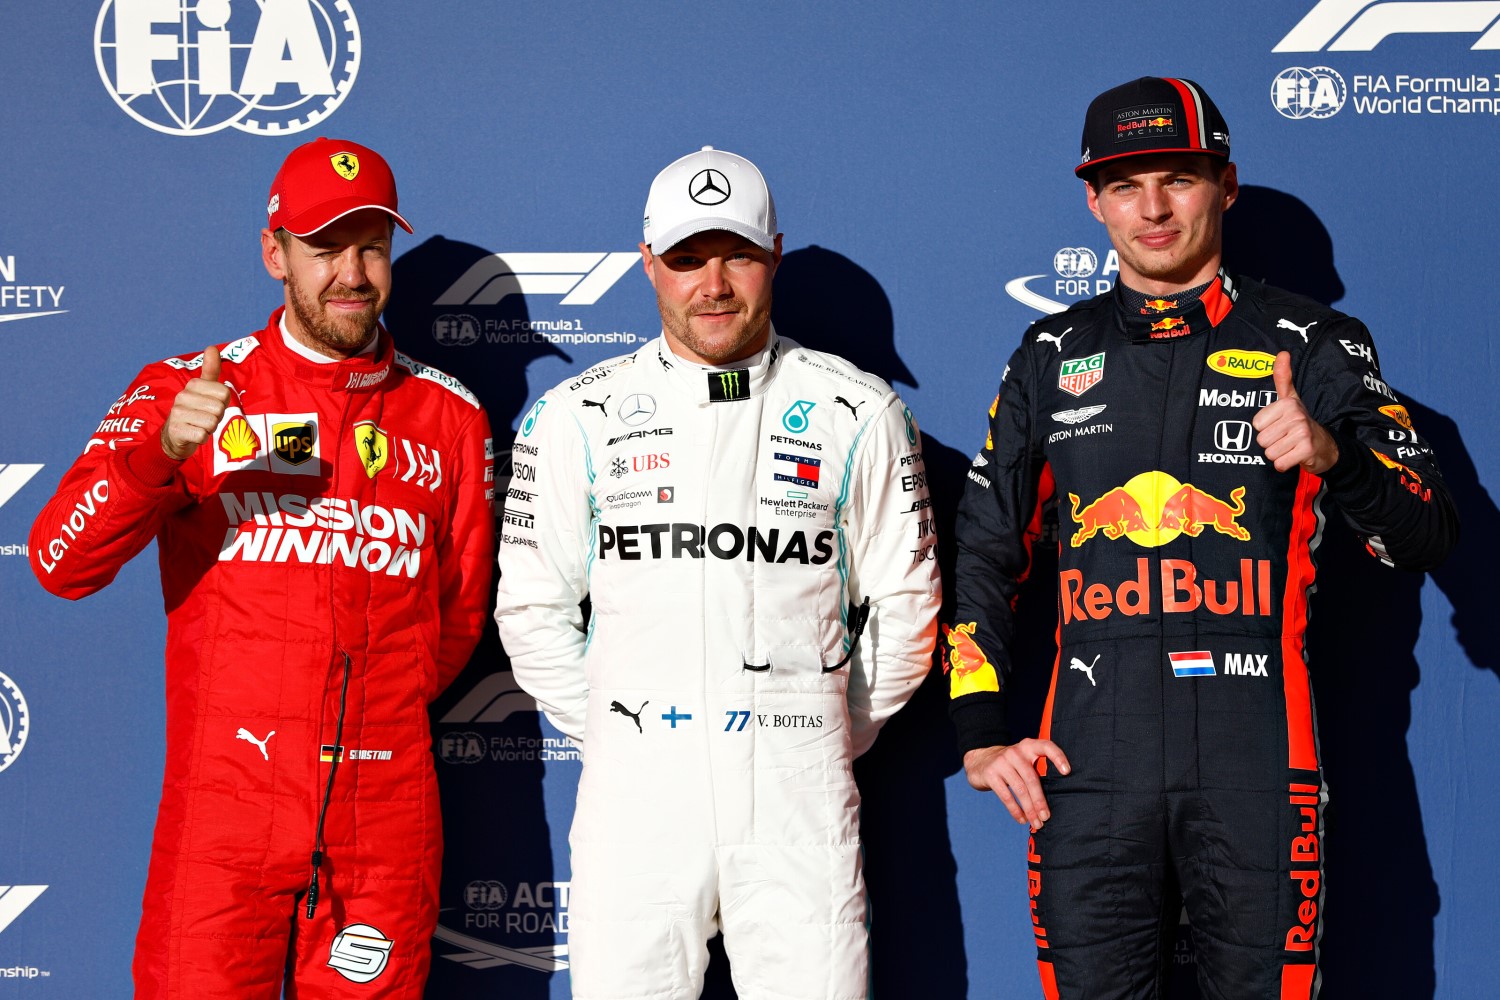 From left, Vettel, Bottas and Verstappen